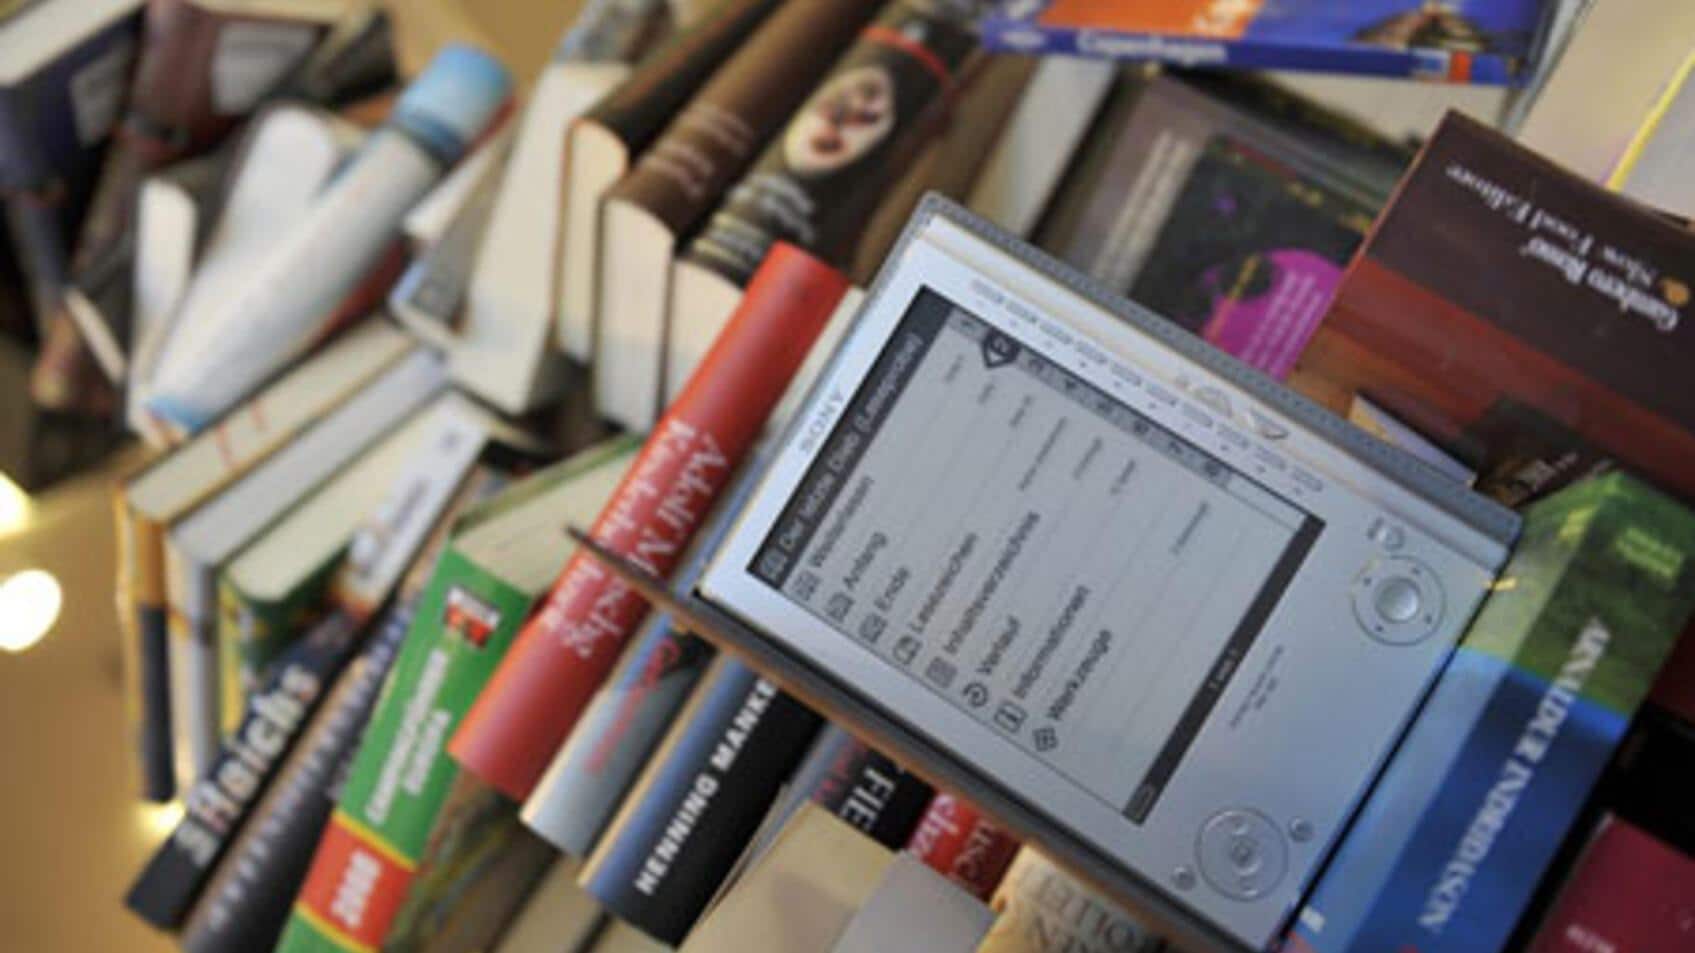 Amazon: E-Books überholen gedruckte Bücher - Handelszeitung